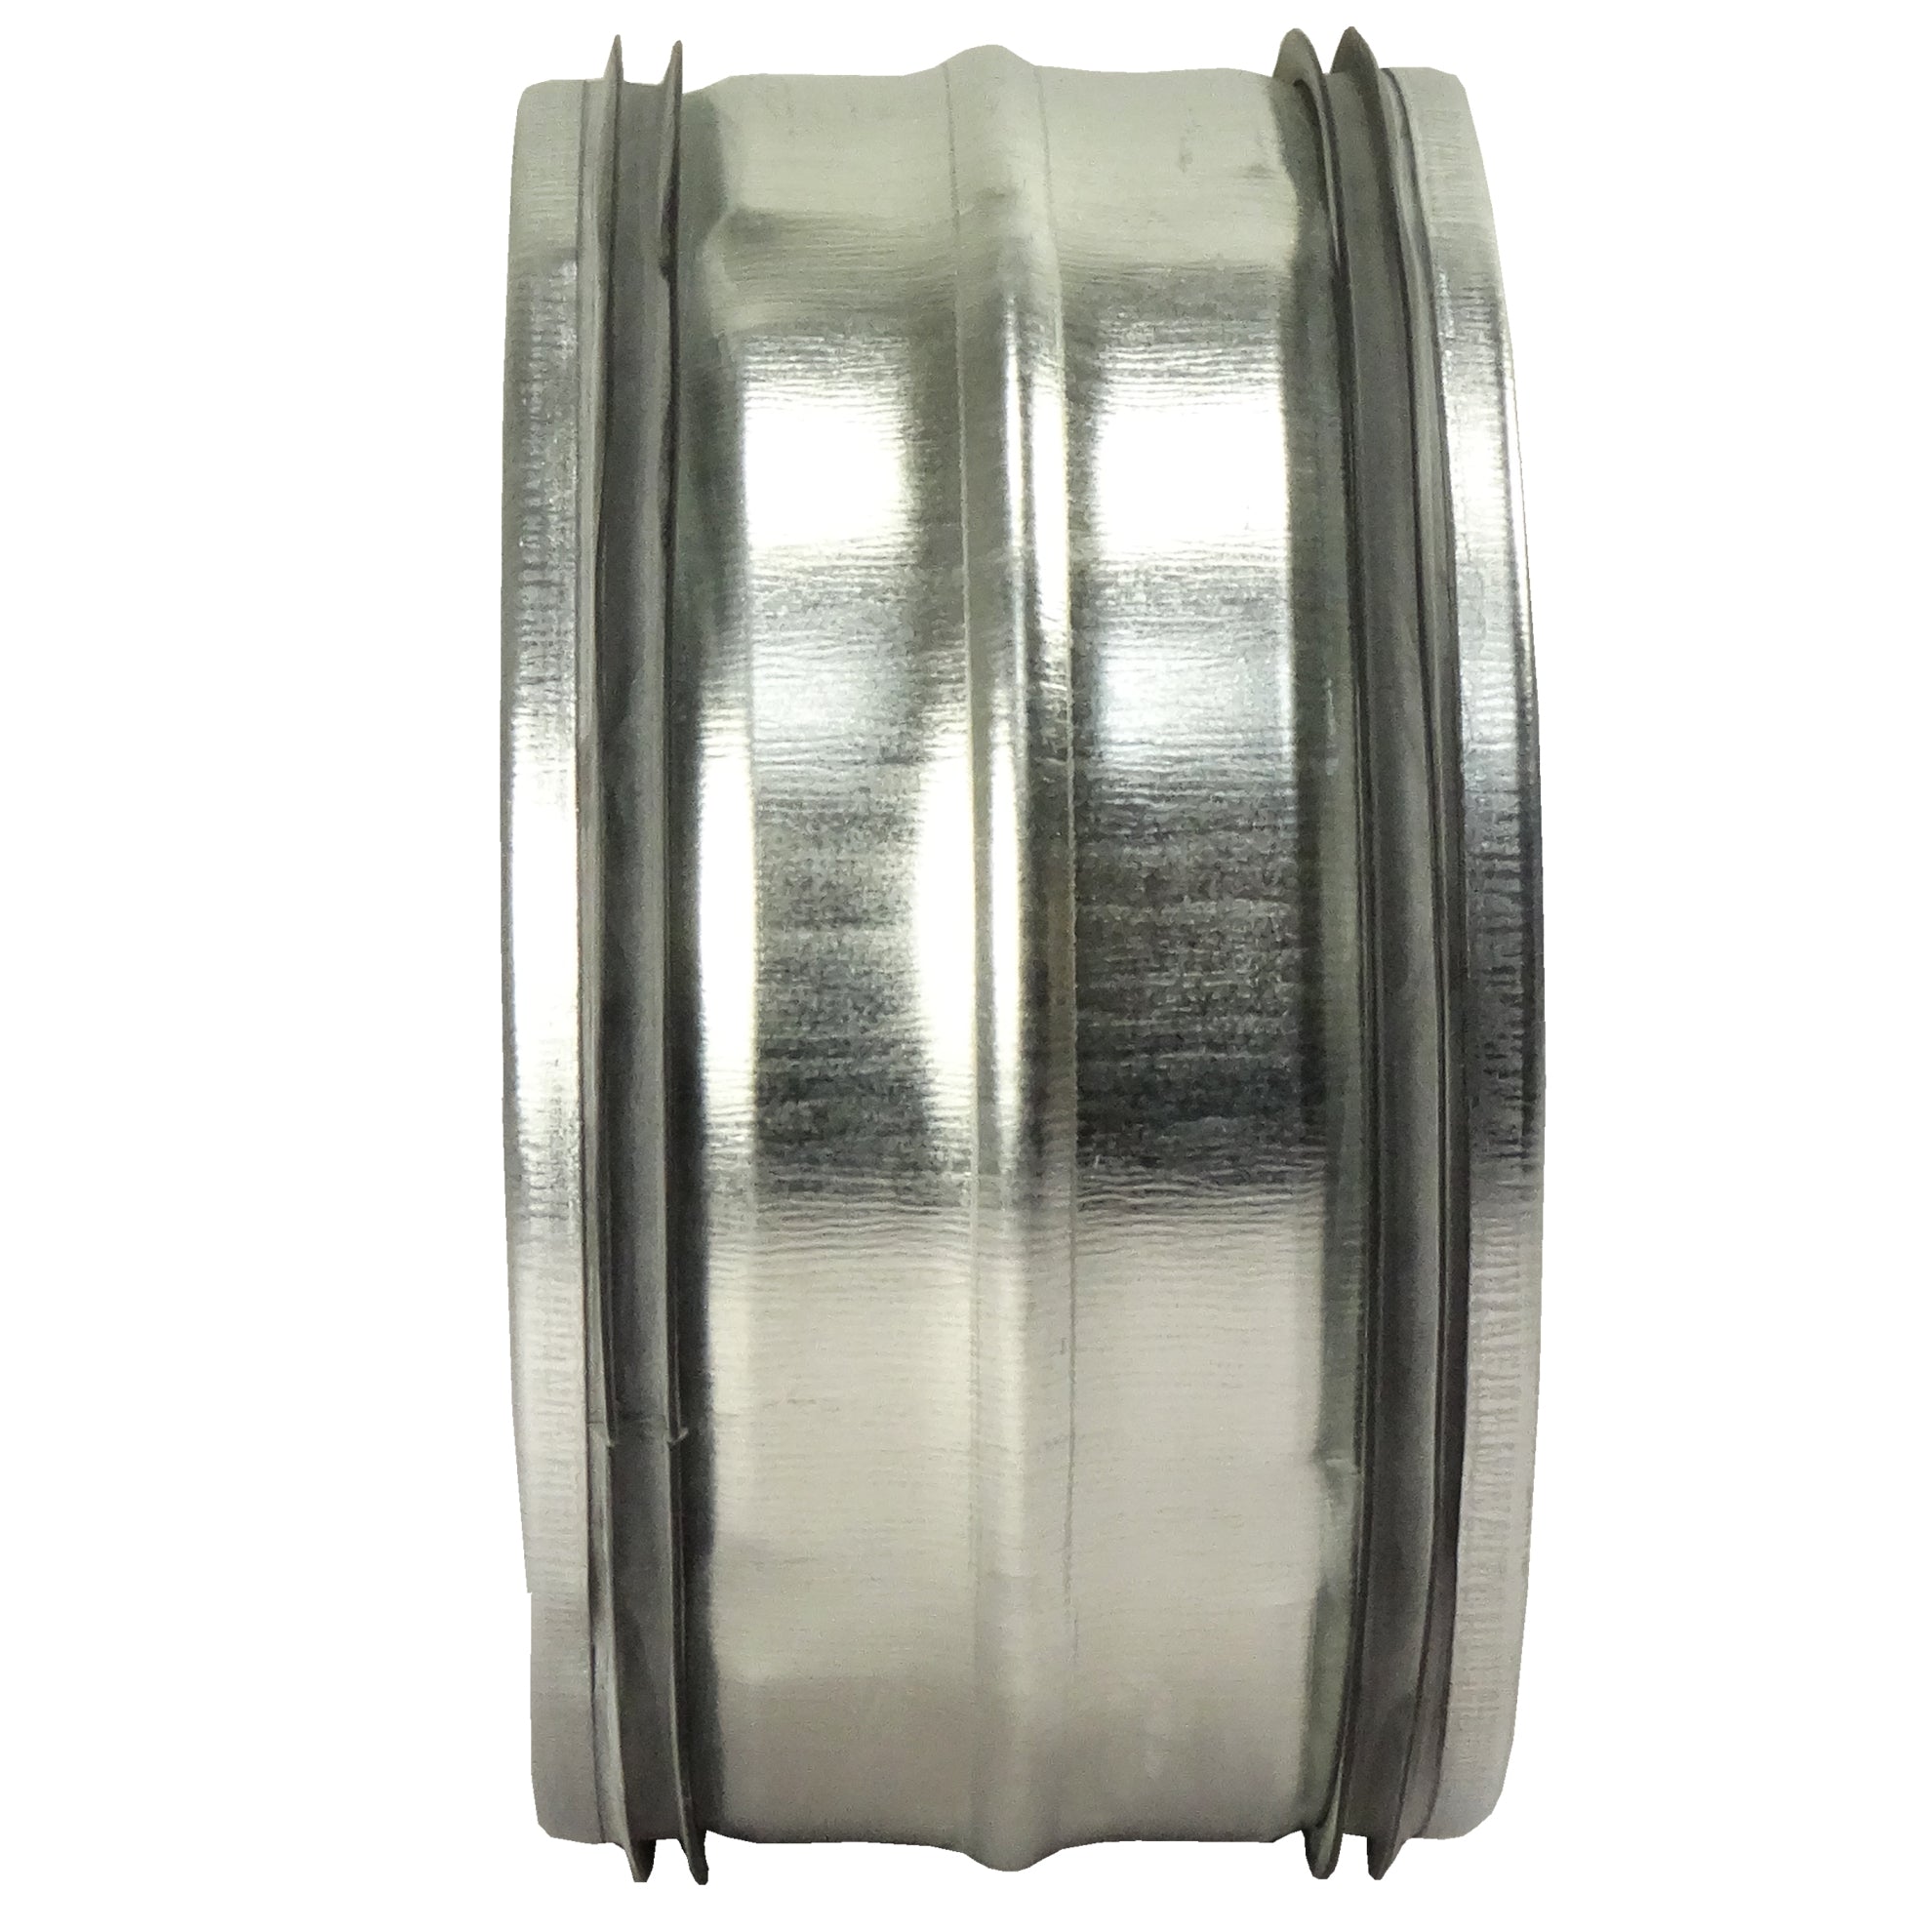 Metall Rohrverbinder mit Gummidichtung Ø 450 mm